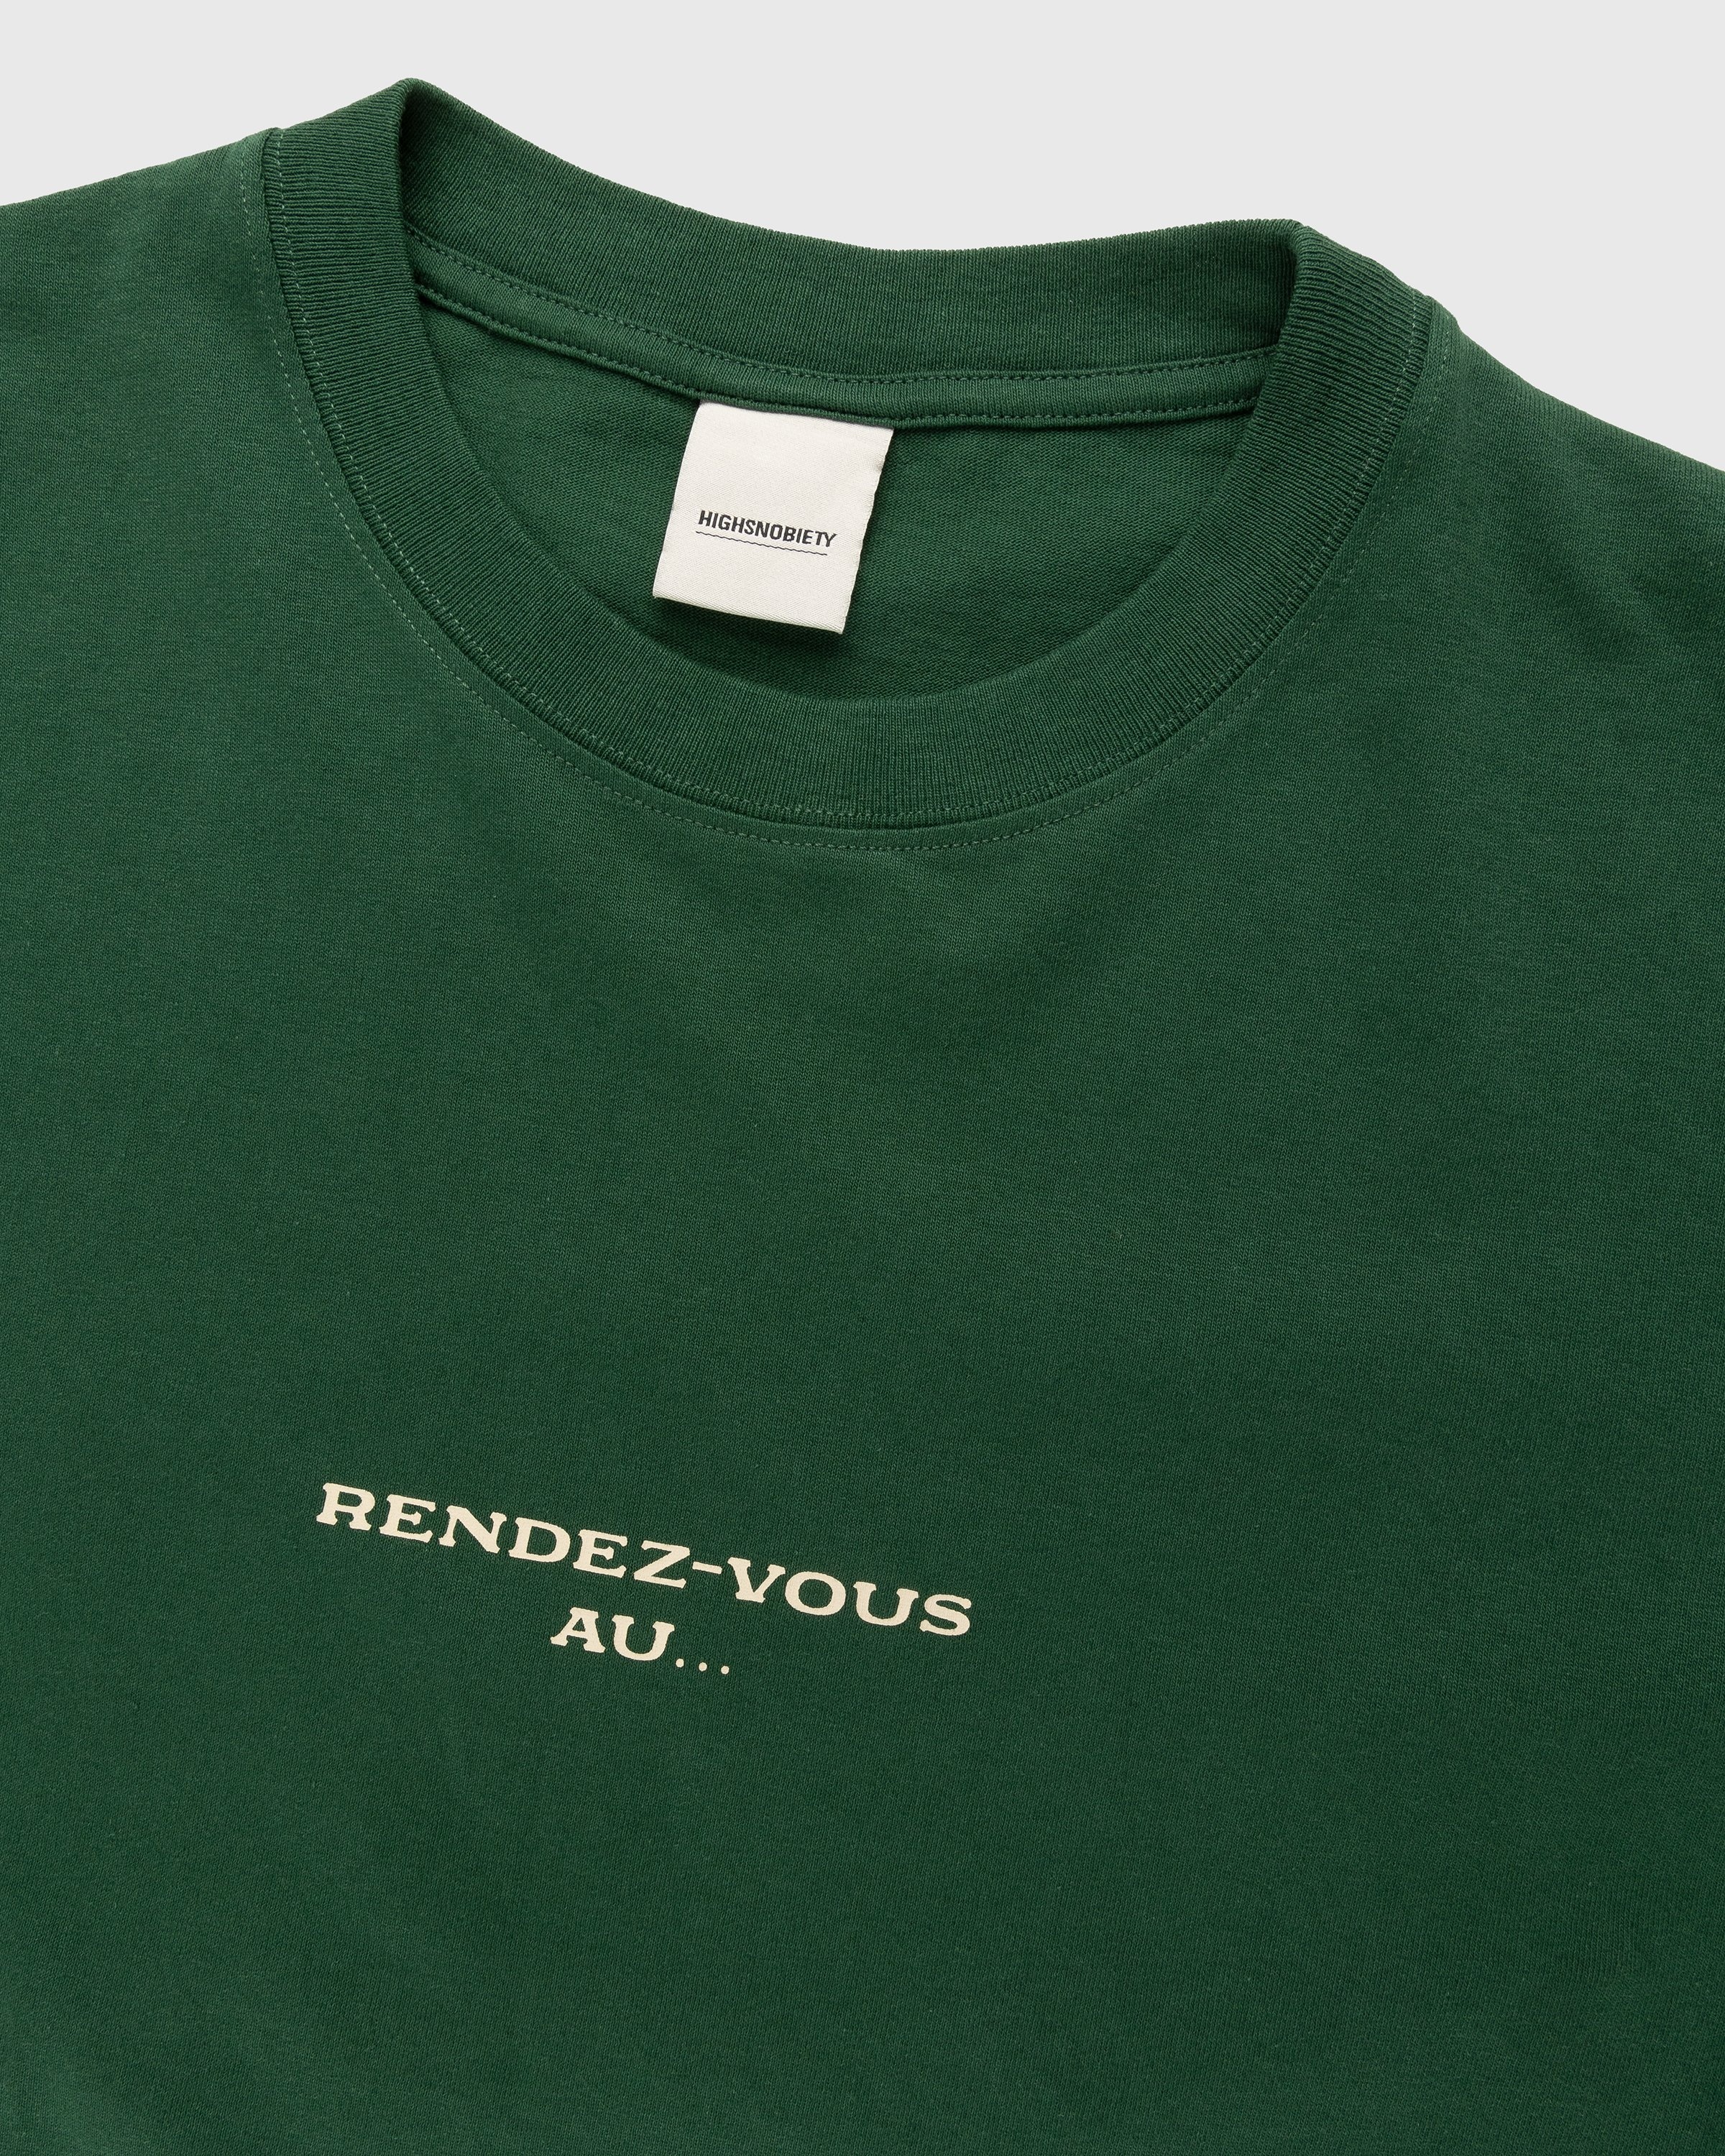 Café de Flore x Highsnobiety – Not In Paris 4 Rendez-vous Au T-Shirt Green - T-Shirts - Green - Image 5